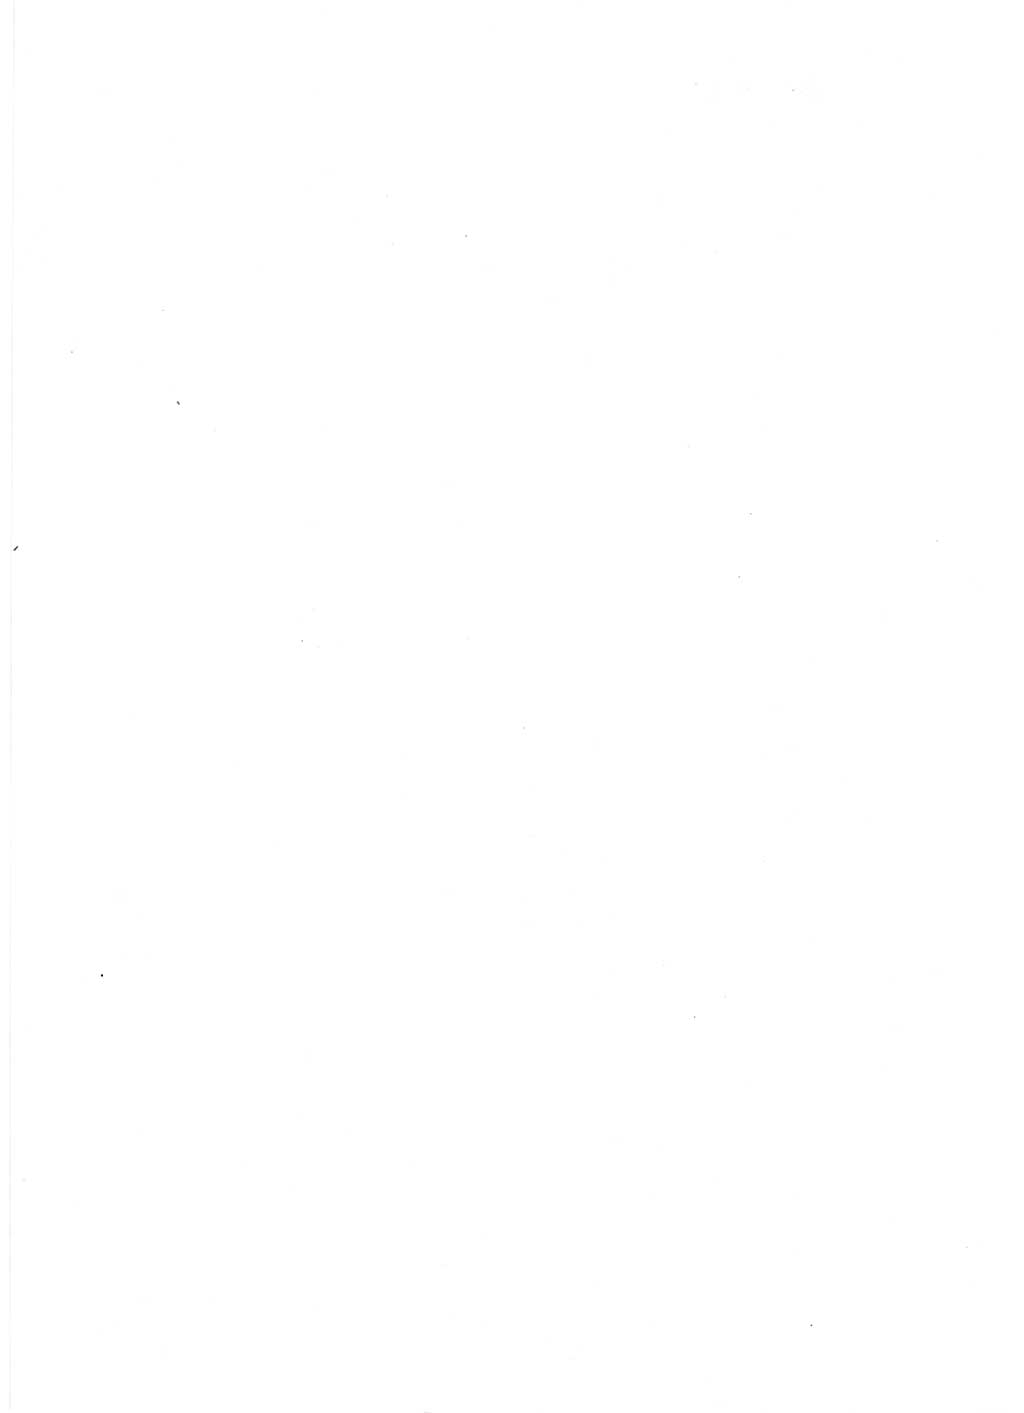 Handbuch für operative Dienste, Abteilung Strafvollzug (SV) [Ministerium des Innern (MdI) Deutsche Demokratische Republik (DDR)] 1981, Seite 138 (Hb. op. D. Abt. SV MdI DDR 1981, S. 138)